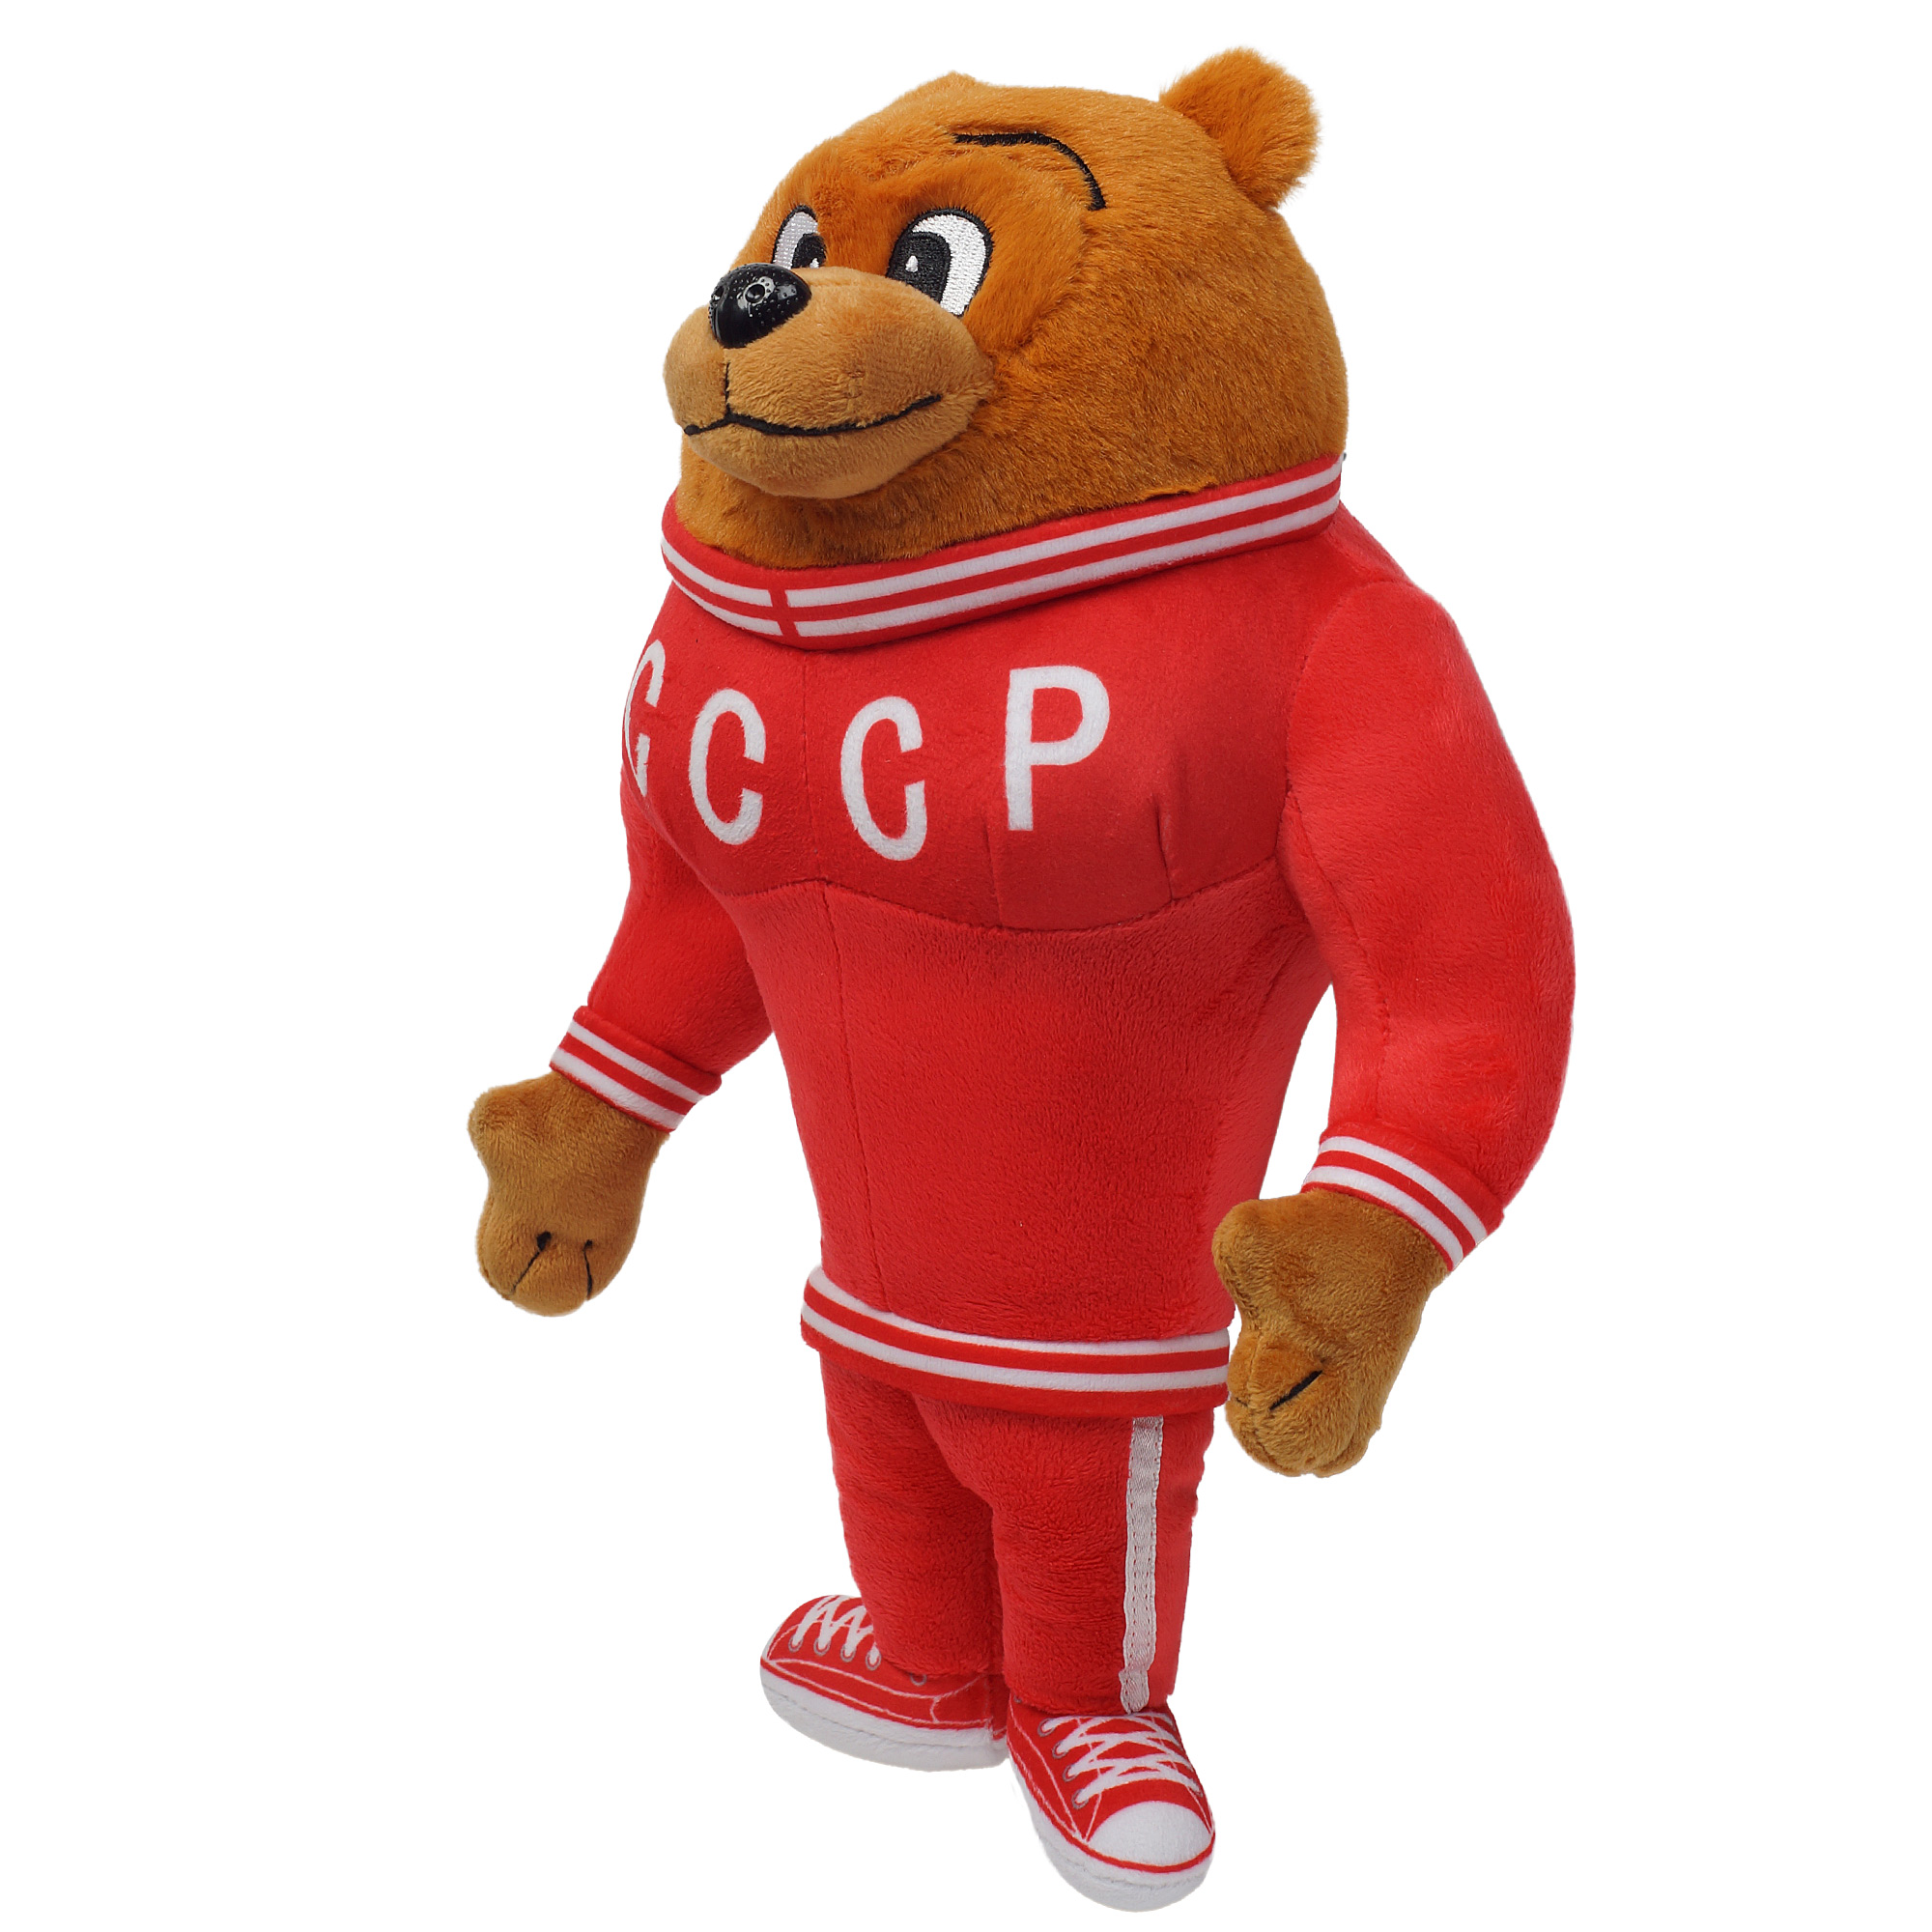 Softoy Игрушка мягкая Медведь спортсмен  32см